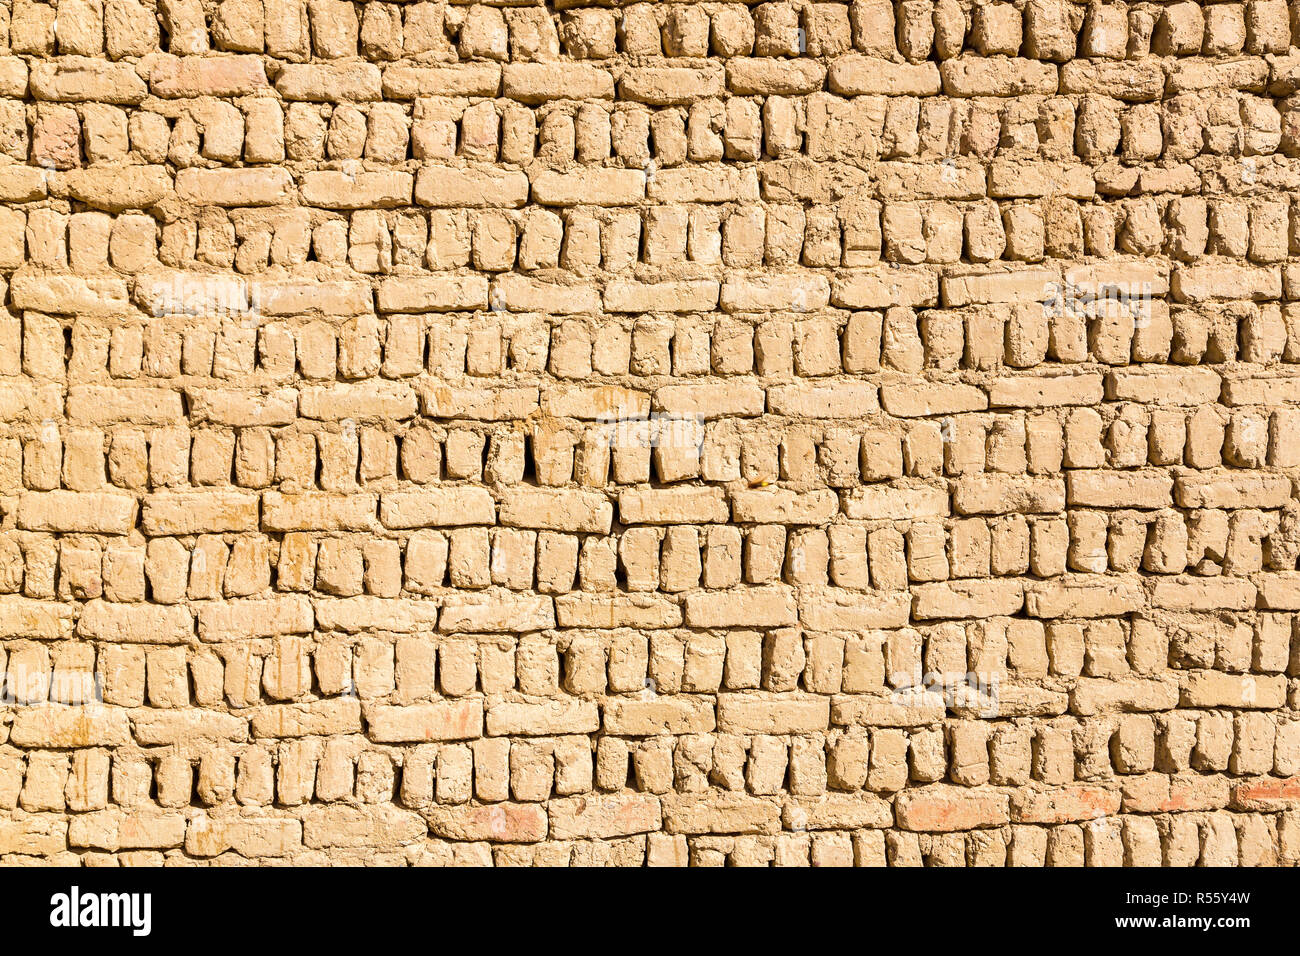 L'ancienne vieille ville musulmane arabe islamique chambre mur construit de briques de boue marron jaune journée ensoleillée sur la texture. Al Qasr, Dakhla Oasis, désert de l'Ouest, l'Egypte. Banque D'Images